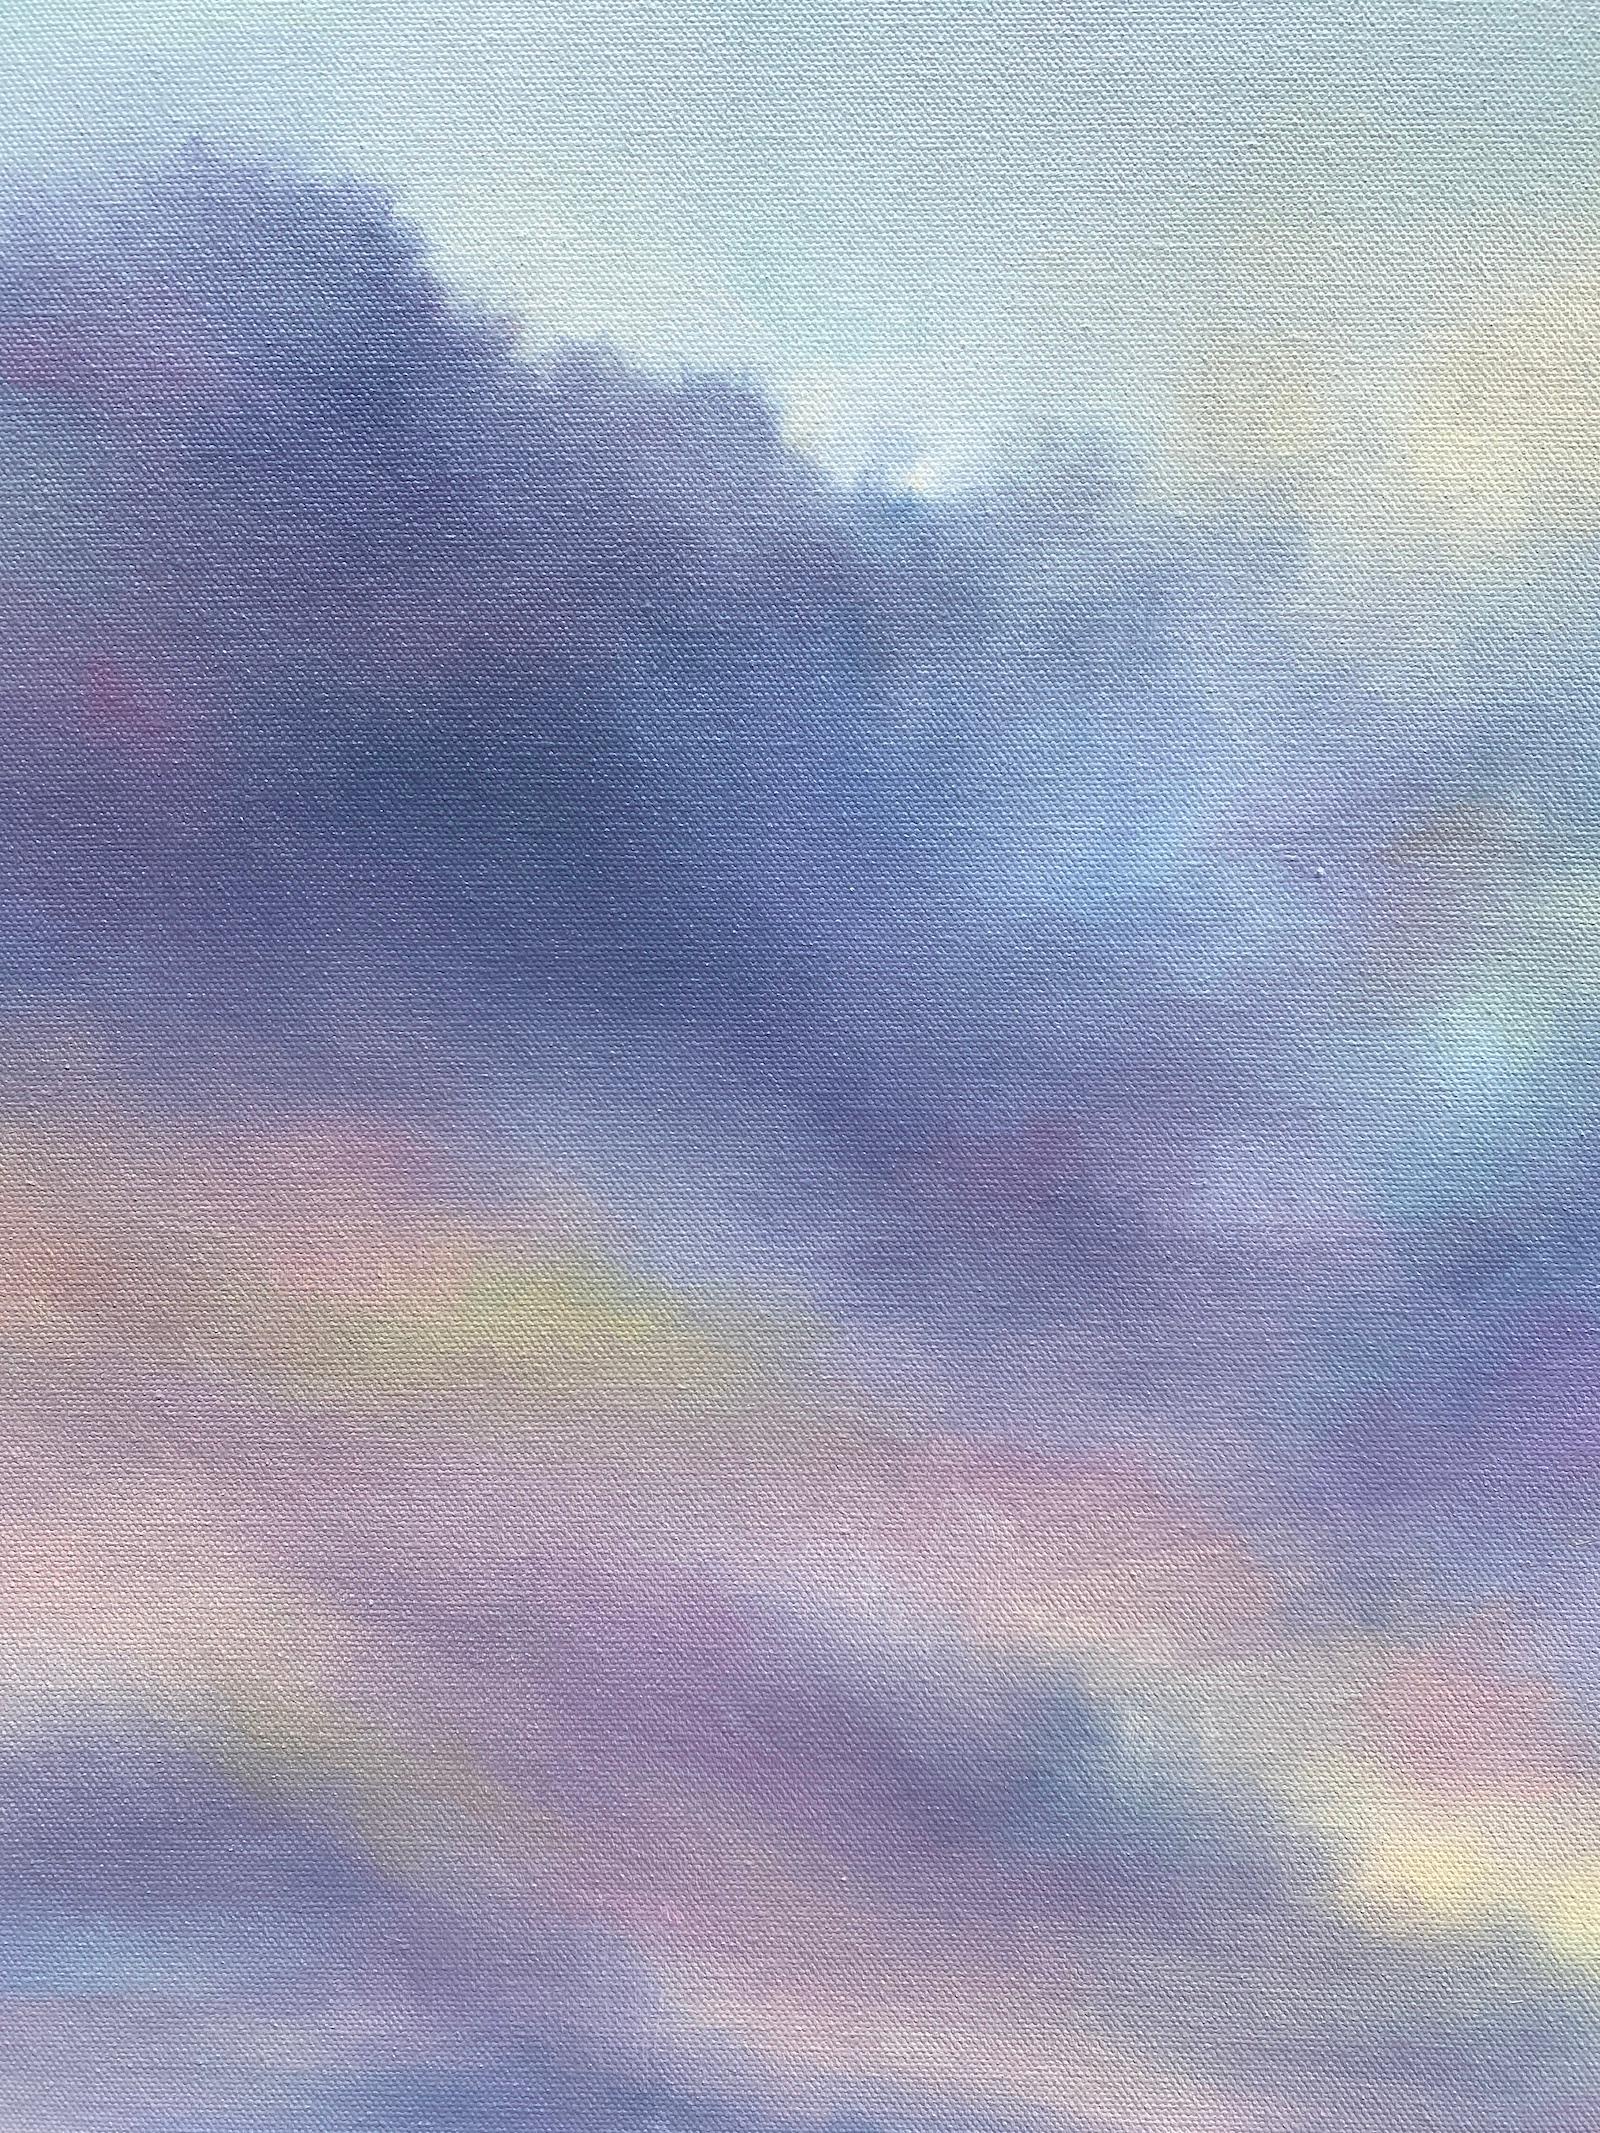 <p>Commentaires de l'artiste<br>Une verdure luxuriante et des nuages violets et rêveurs créent une atmosphère paisible au-dessus d'une zone humide côtière. À l'aube, la scène dégage une beauté sereine alors qu'un subtil soupçon de lumière solaire